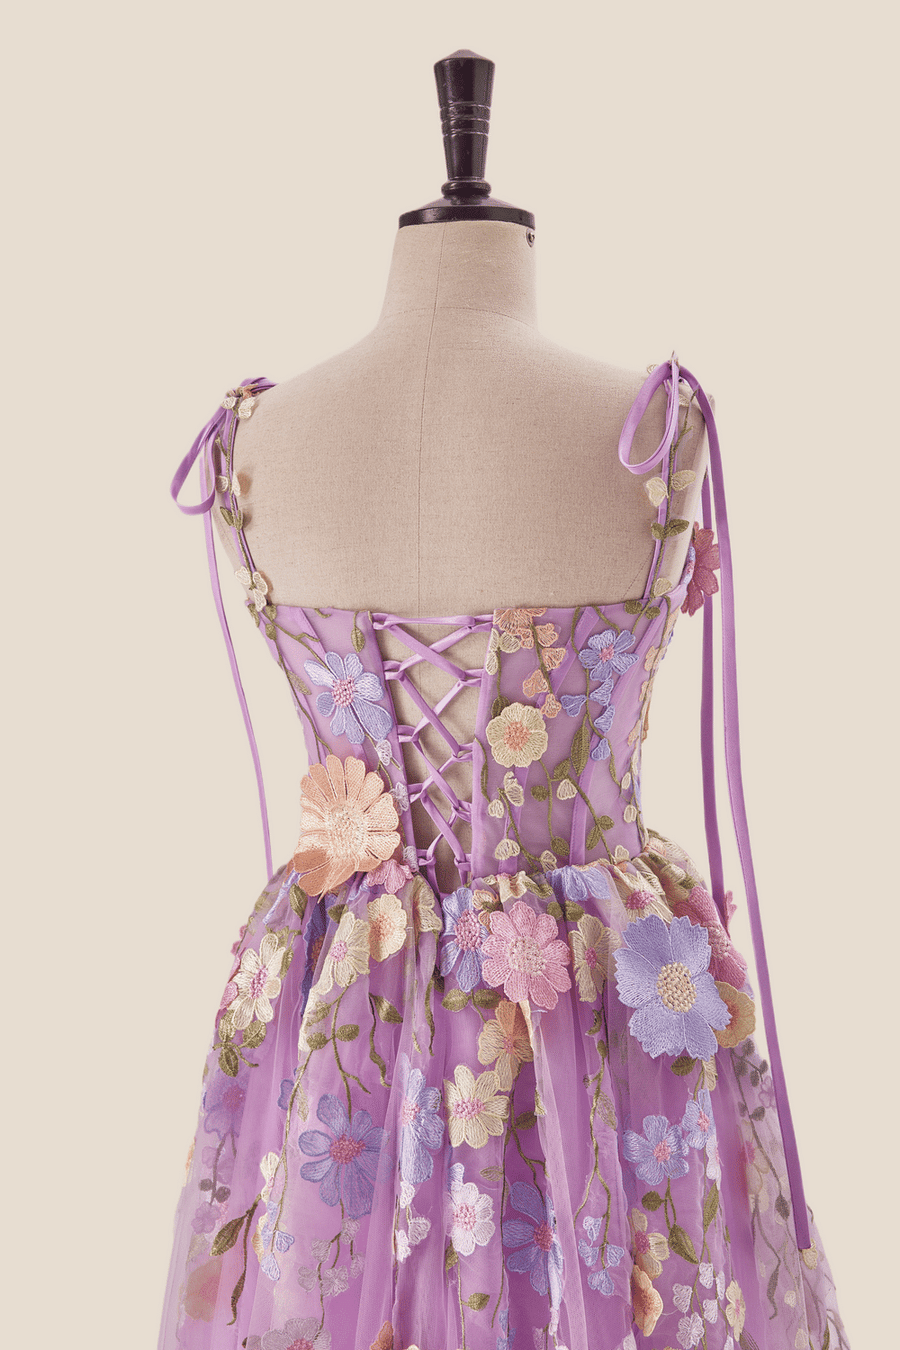 Lilac 3D Floral Tea Length Party Dress